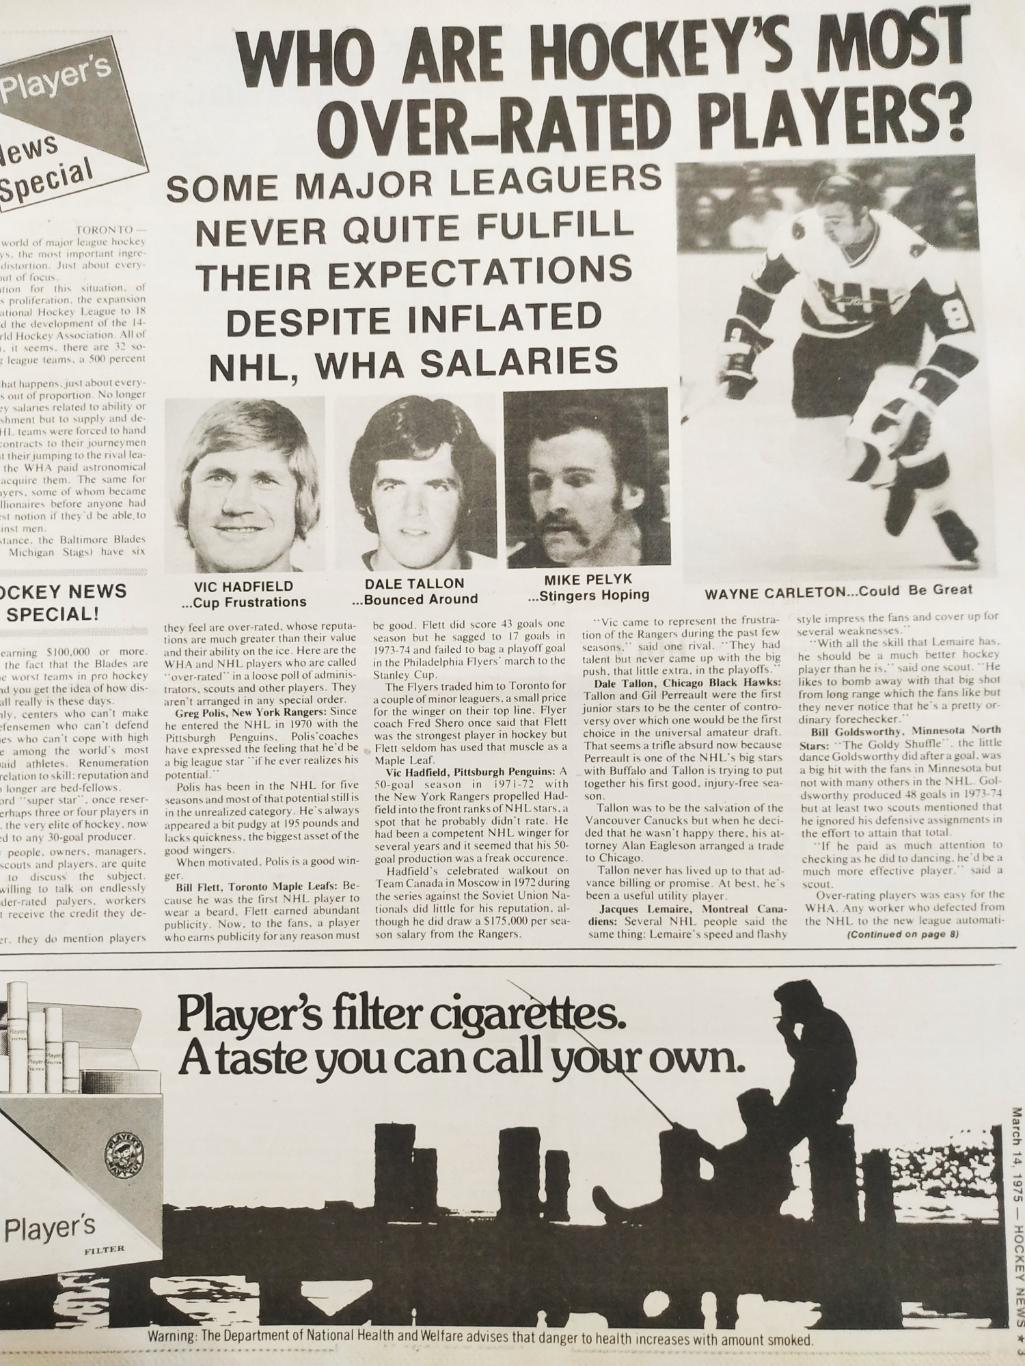 ХОККЕЙ ЖУРНАЛ ЕЖЕНЕДЕЛЬНИК НХЛ НОВОСТИ ХОККЕЯ MAR.14 1975 NHL THE HOCKEY NEWS 2